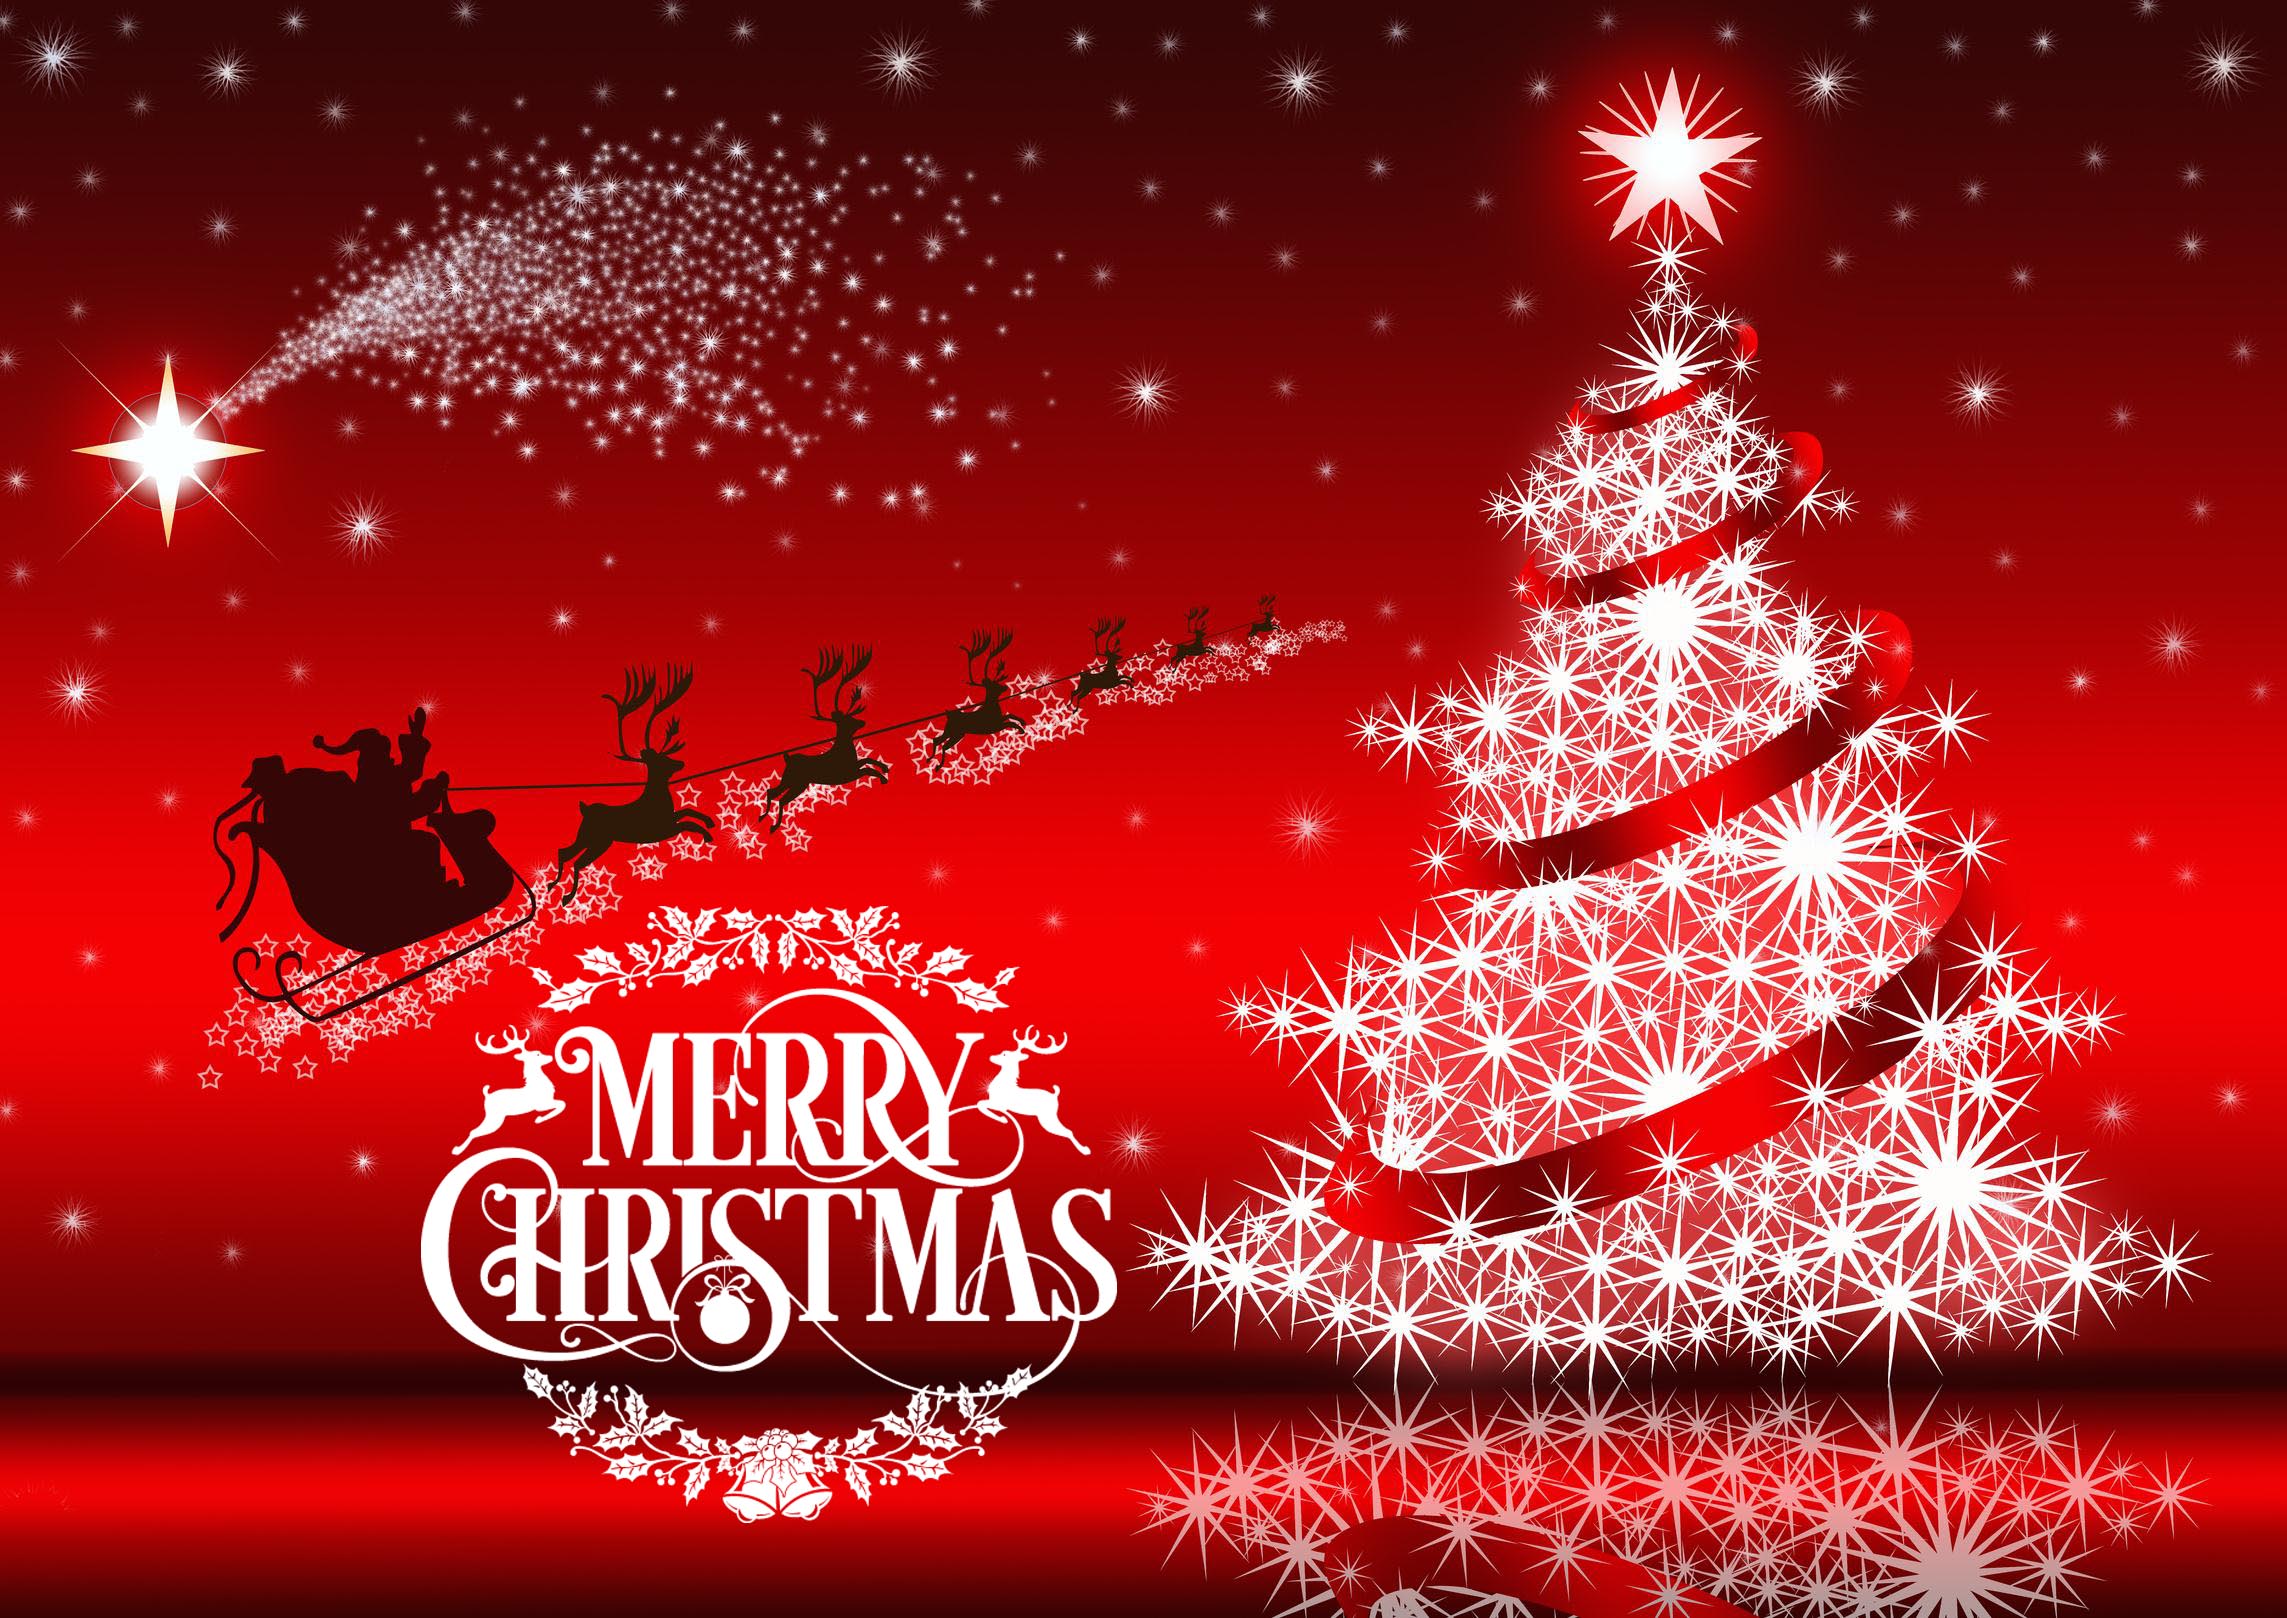 happy-merry-christmas-wishes-greetings-santa-rein-deer-hd-wallpaper.jpg